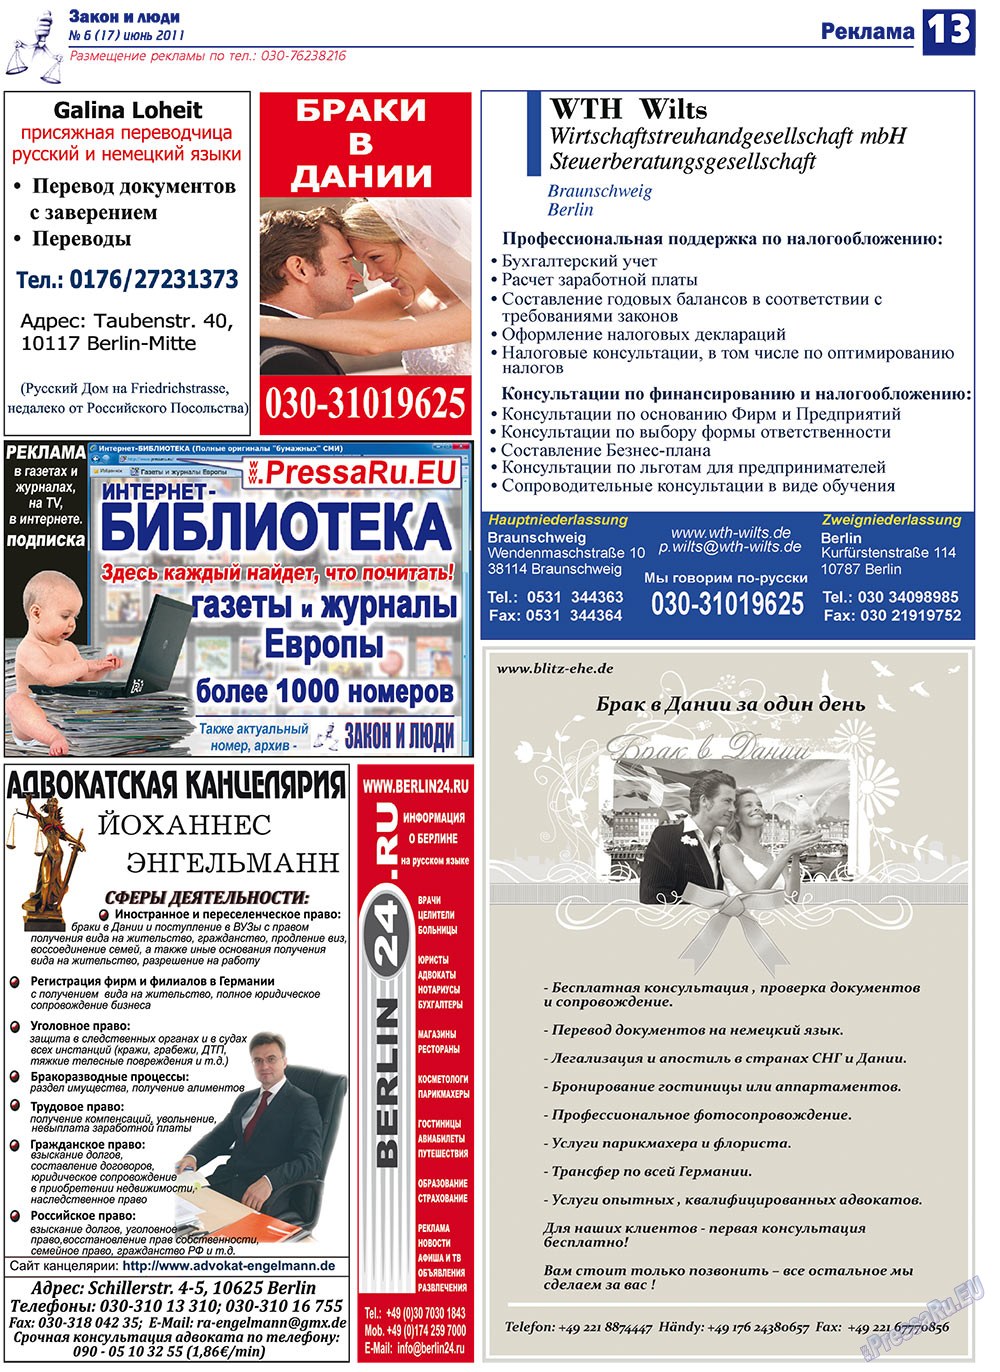 Закон и люди, газета. 2011 №6 стр.13